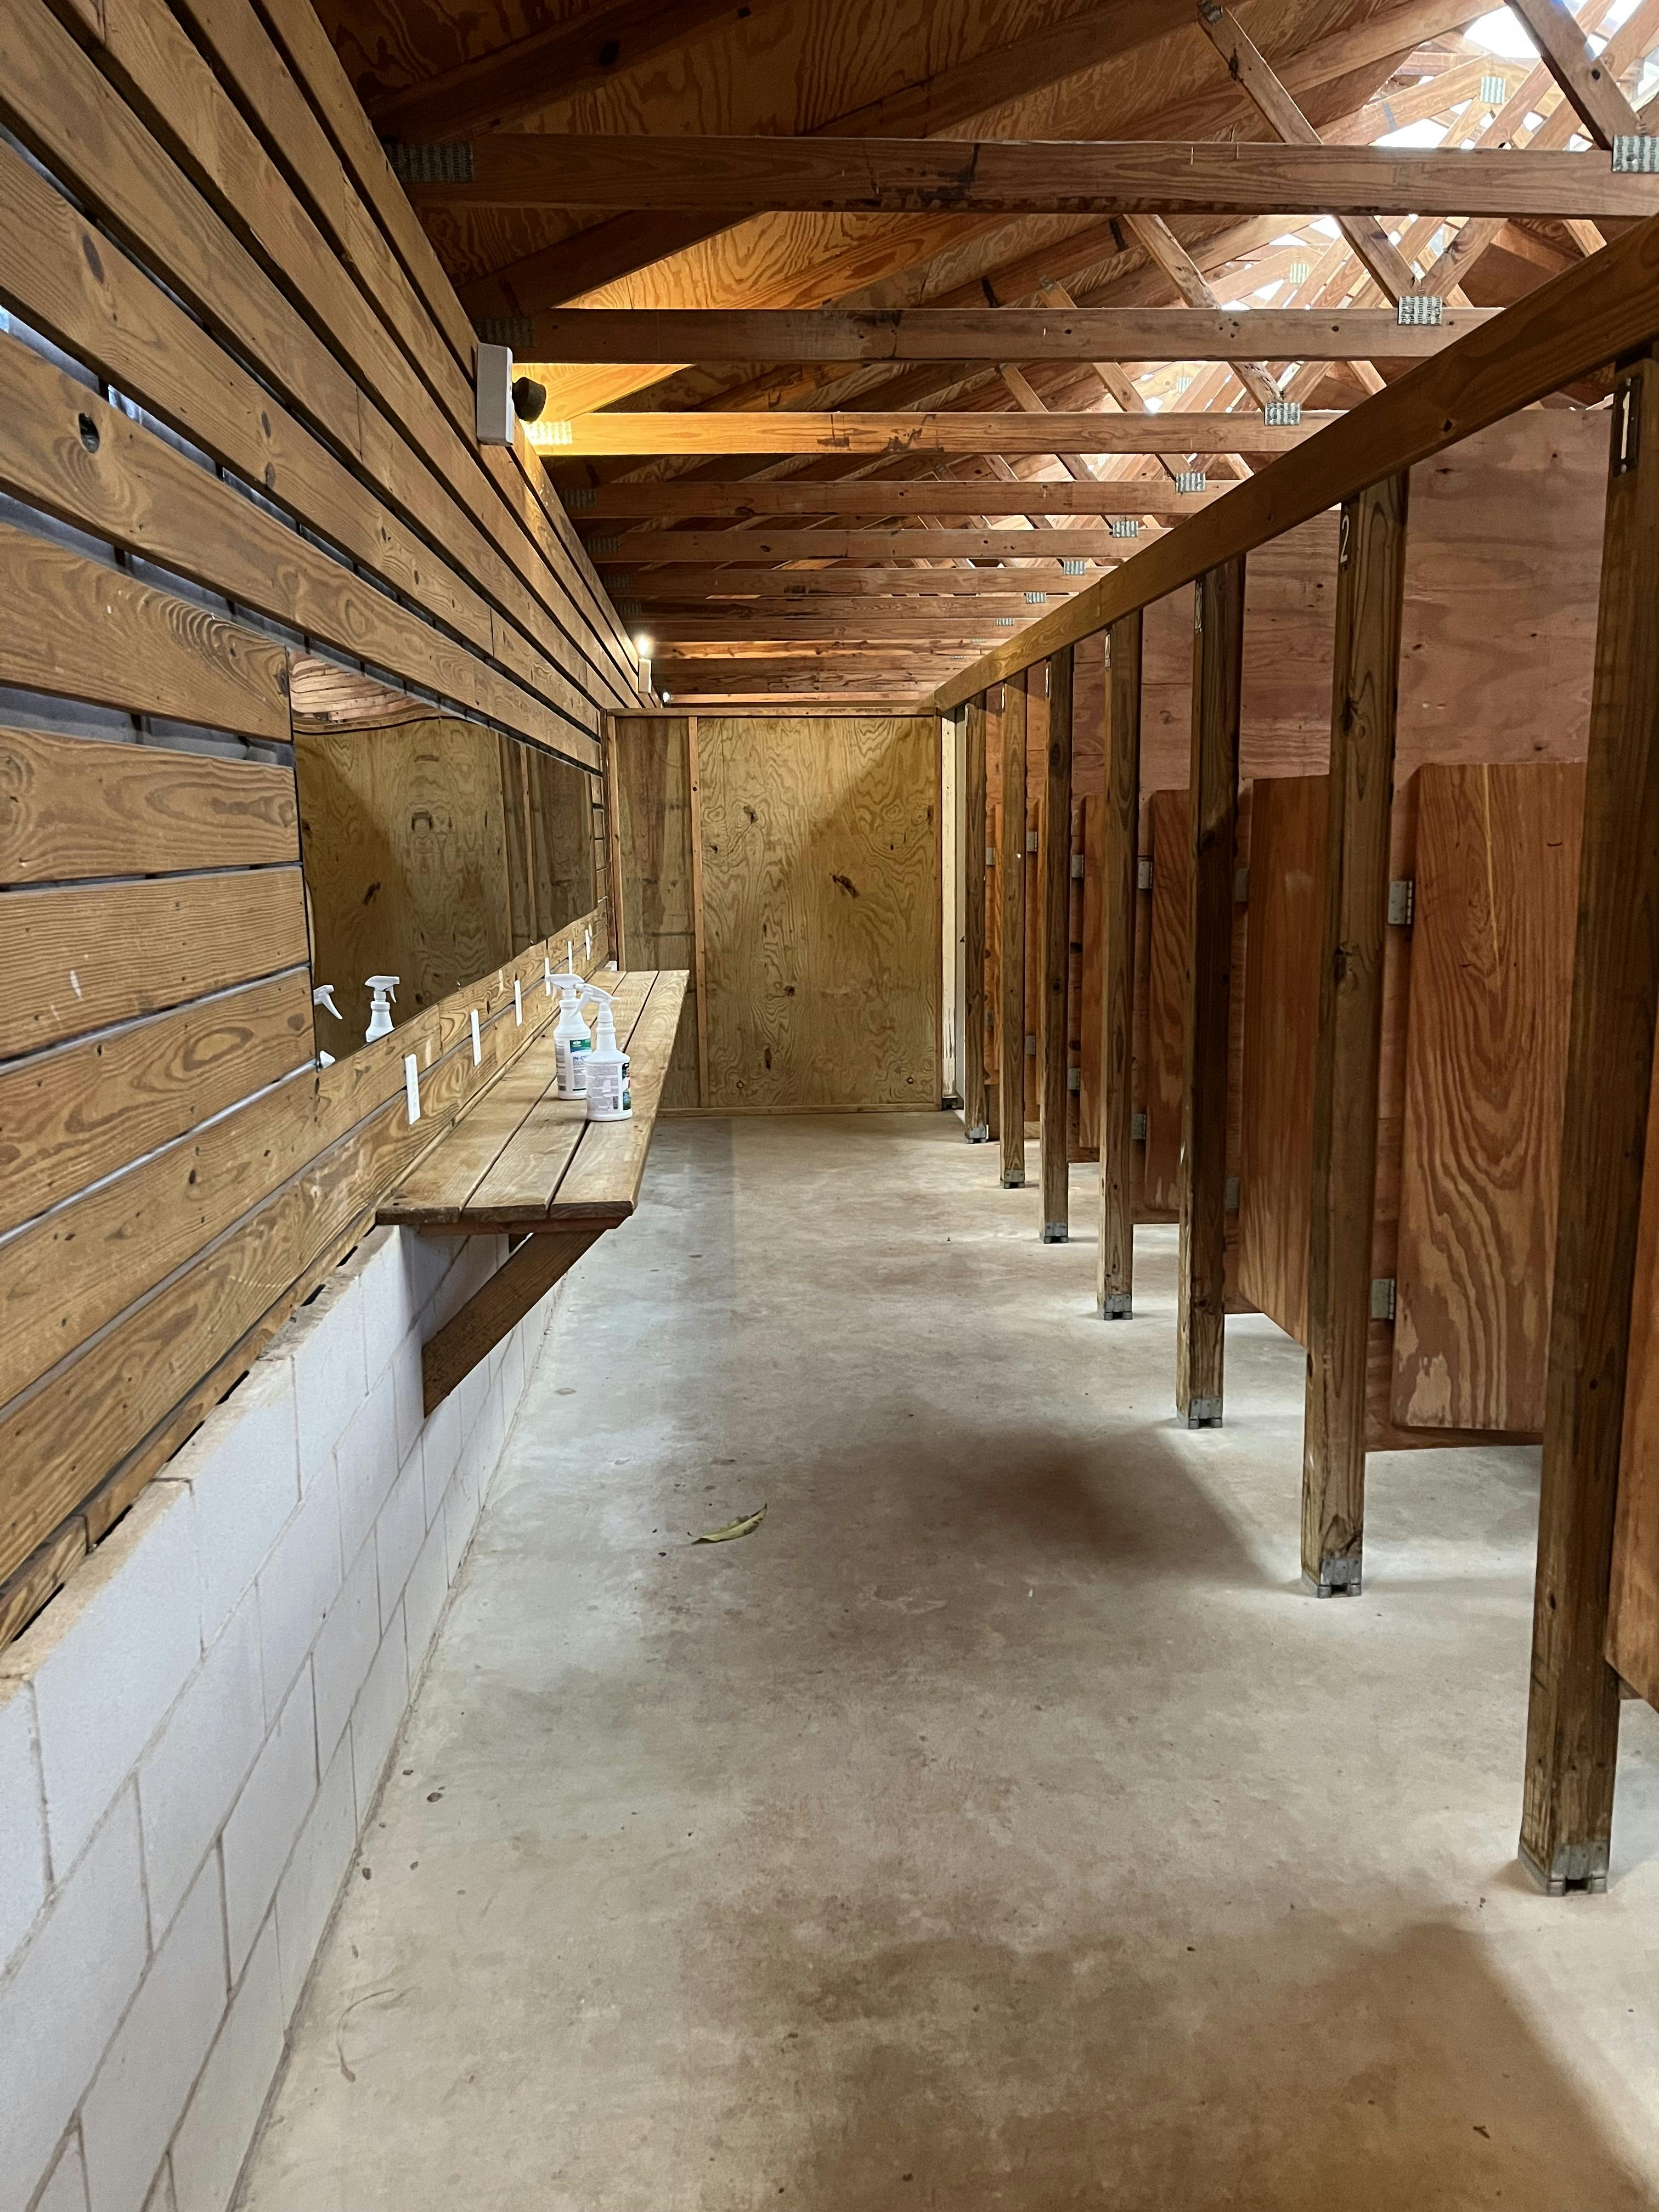 Restroom and shower stalls